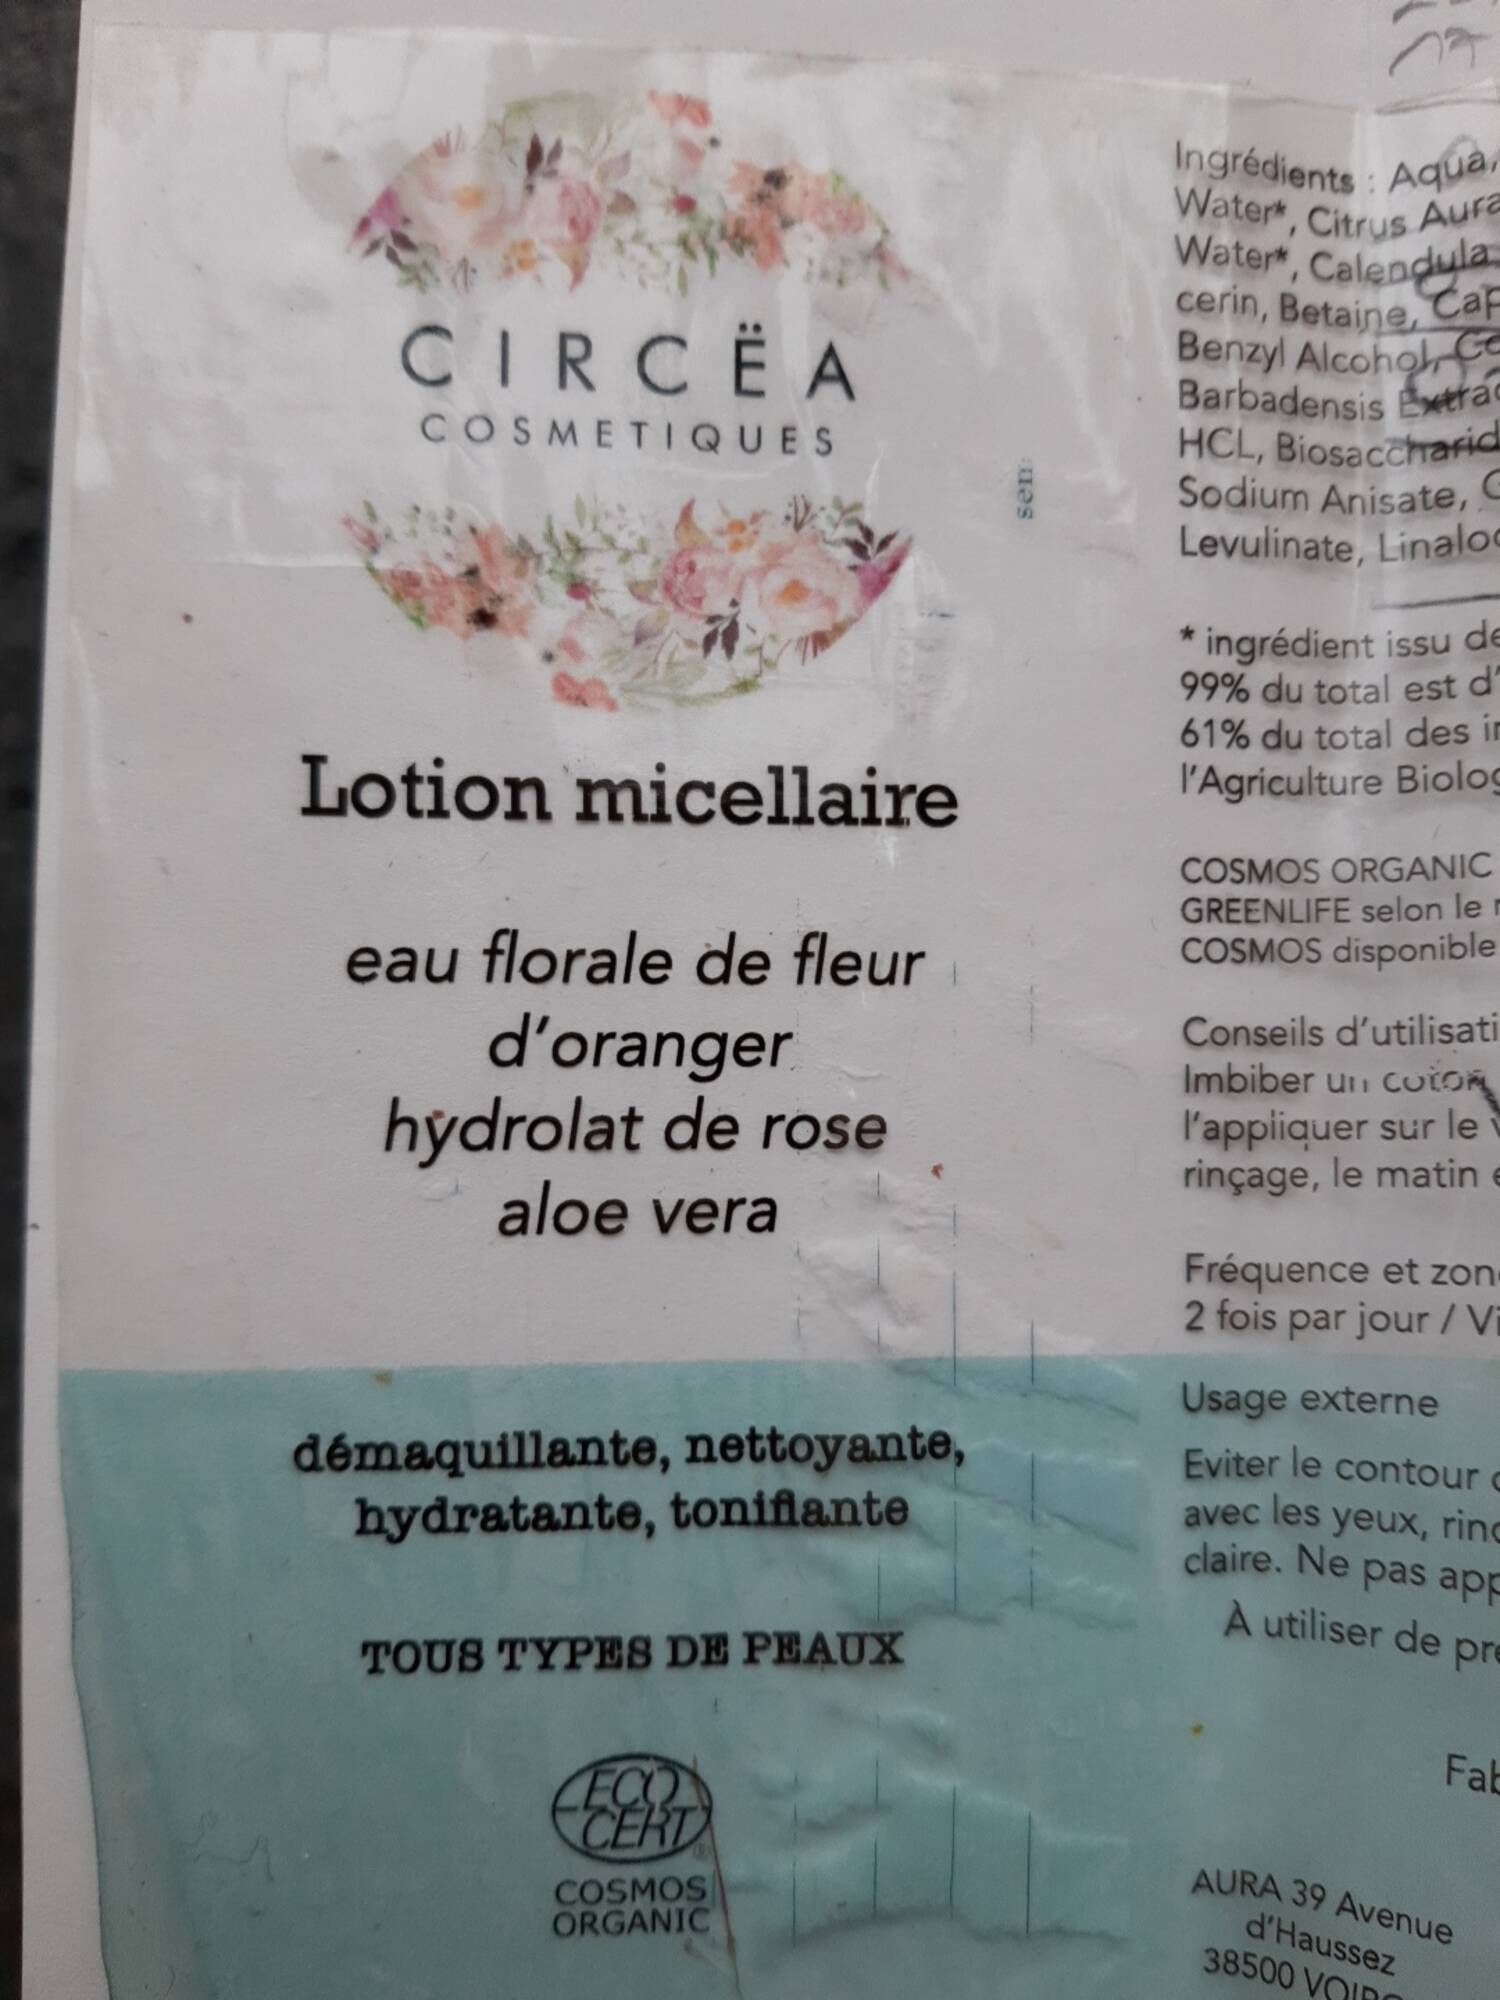 CIRCËA - Lotion micellaire